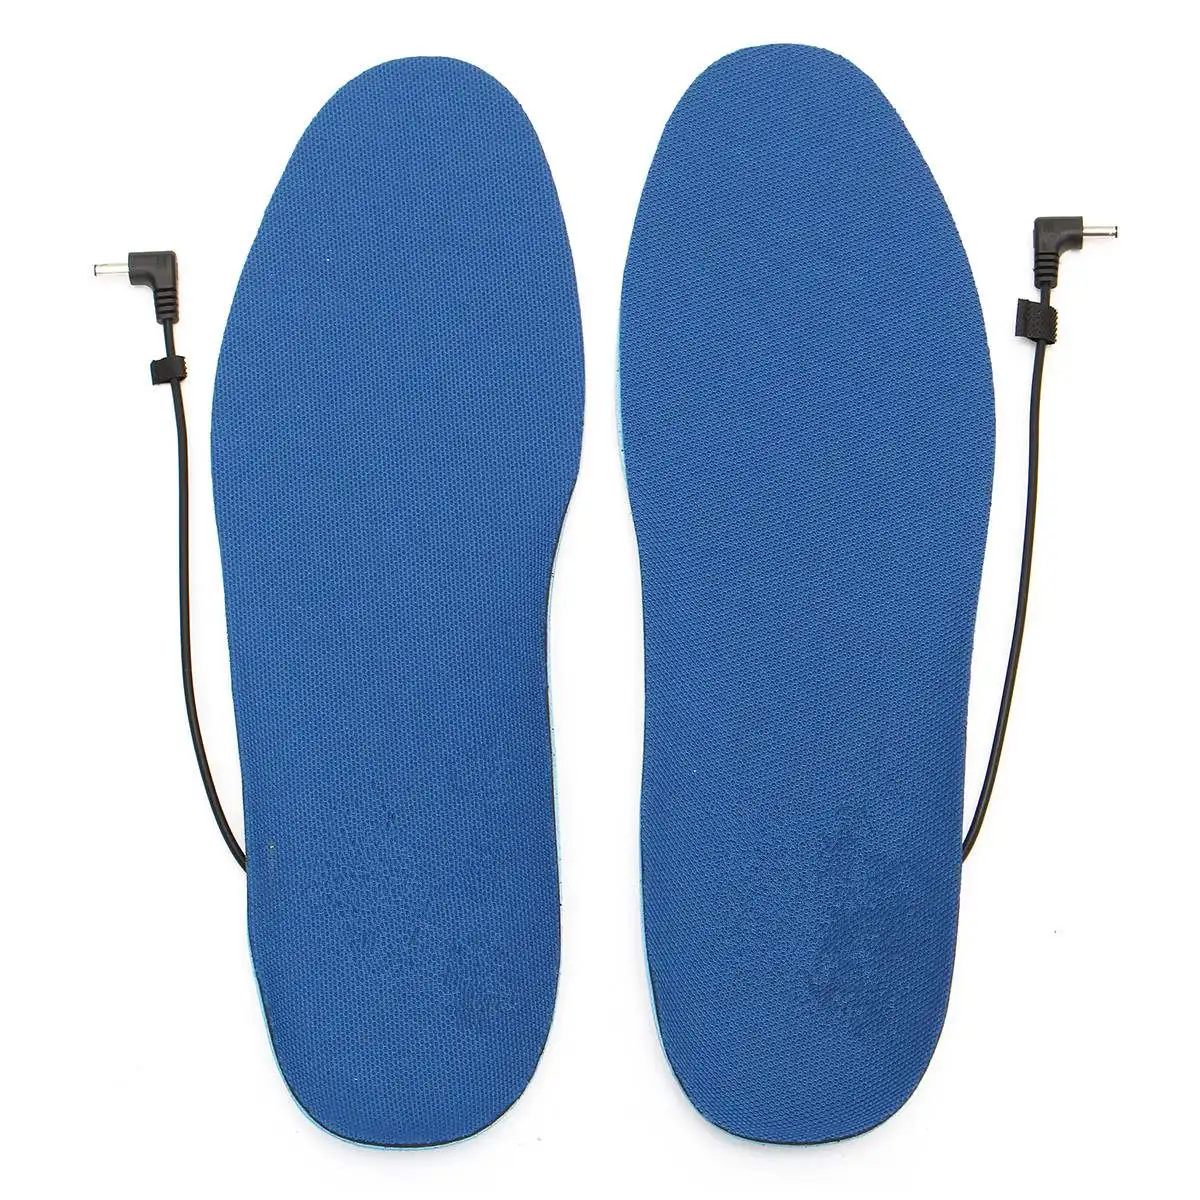 BSAID USB стельки для обуви с электрическим подогревом, женские и мужские гетры для ног, Теплые Зимние Стельки с аккумулятором, подушечки для ног DIY M/L коврик